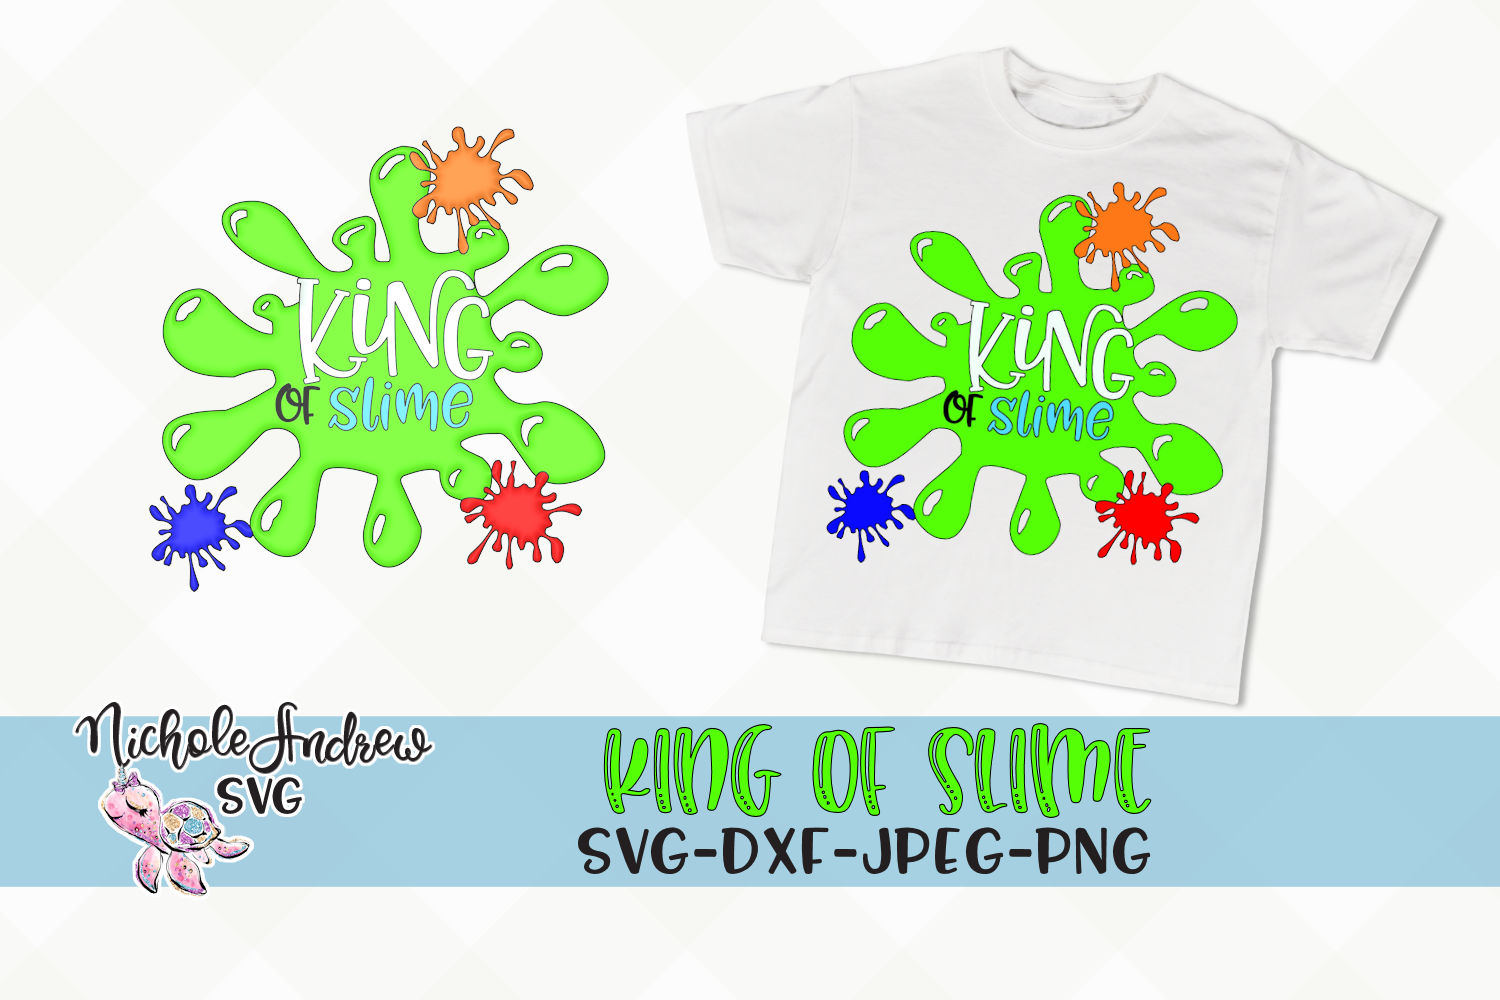 King of slime, King of slime SVG, SVG, JPEG, DXF, PNG (106841) | SVGs ...